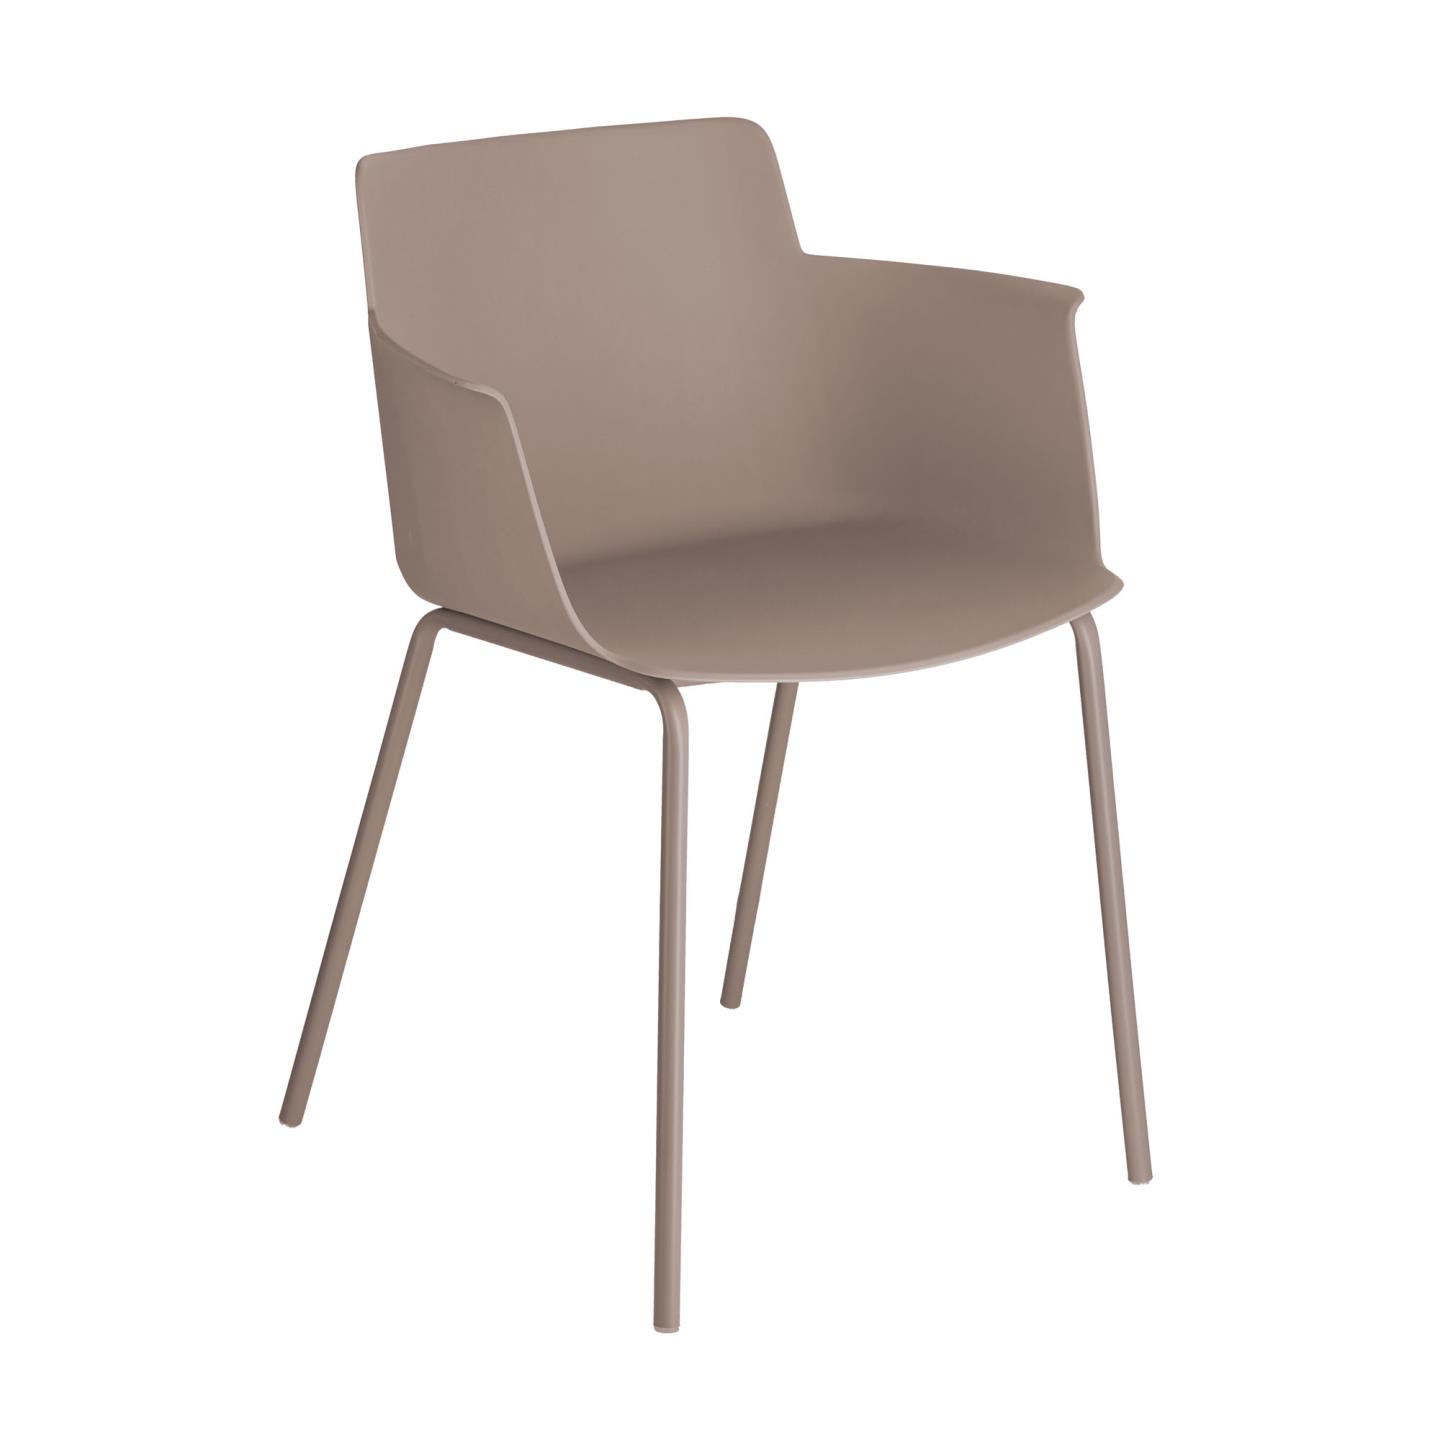 LAFORMA Hannia spisebordsstol, m. armlæn - brun polypropylen og brun stål